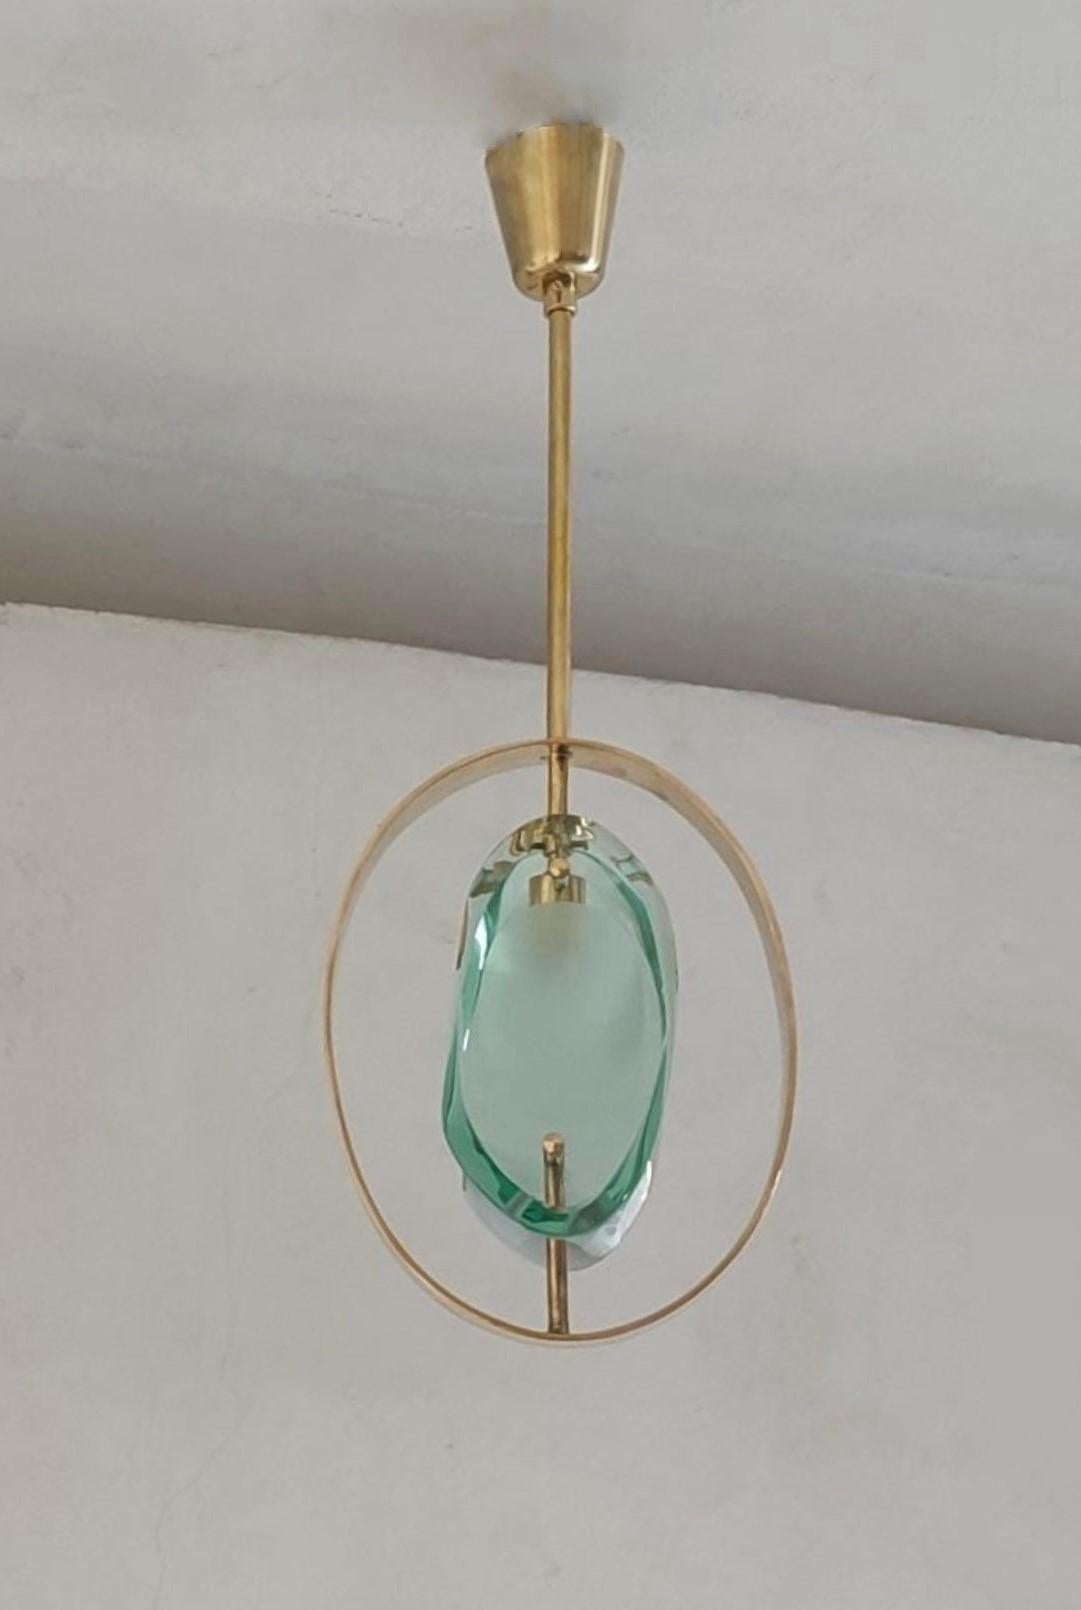 Pendentif au design emblématique réalisé par Max Ingrand pour Fontana Arte, modèle 1933, Italie, 1961. Panneaux à double lentille taillée de forme organique en verre de Murano épais et profilé, poli et sablé au centre, insérés dans un anneau en